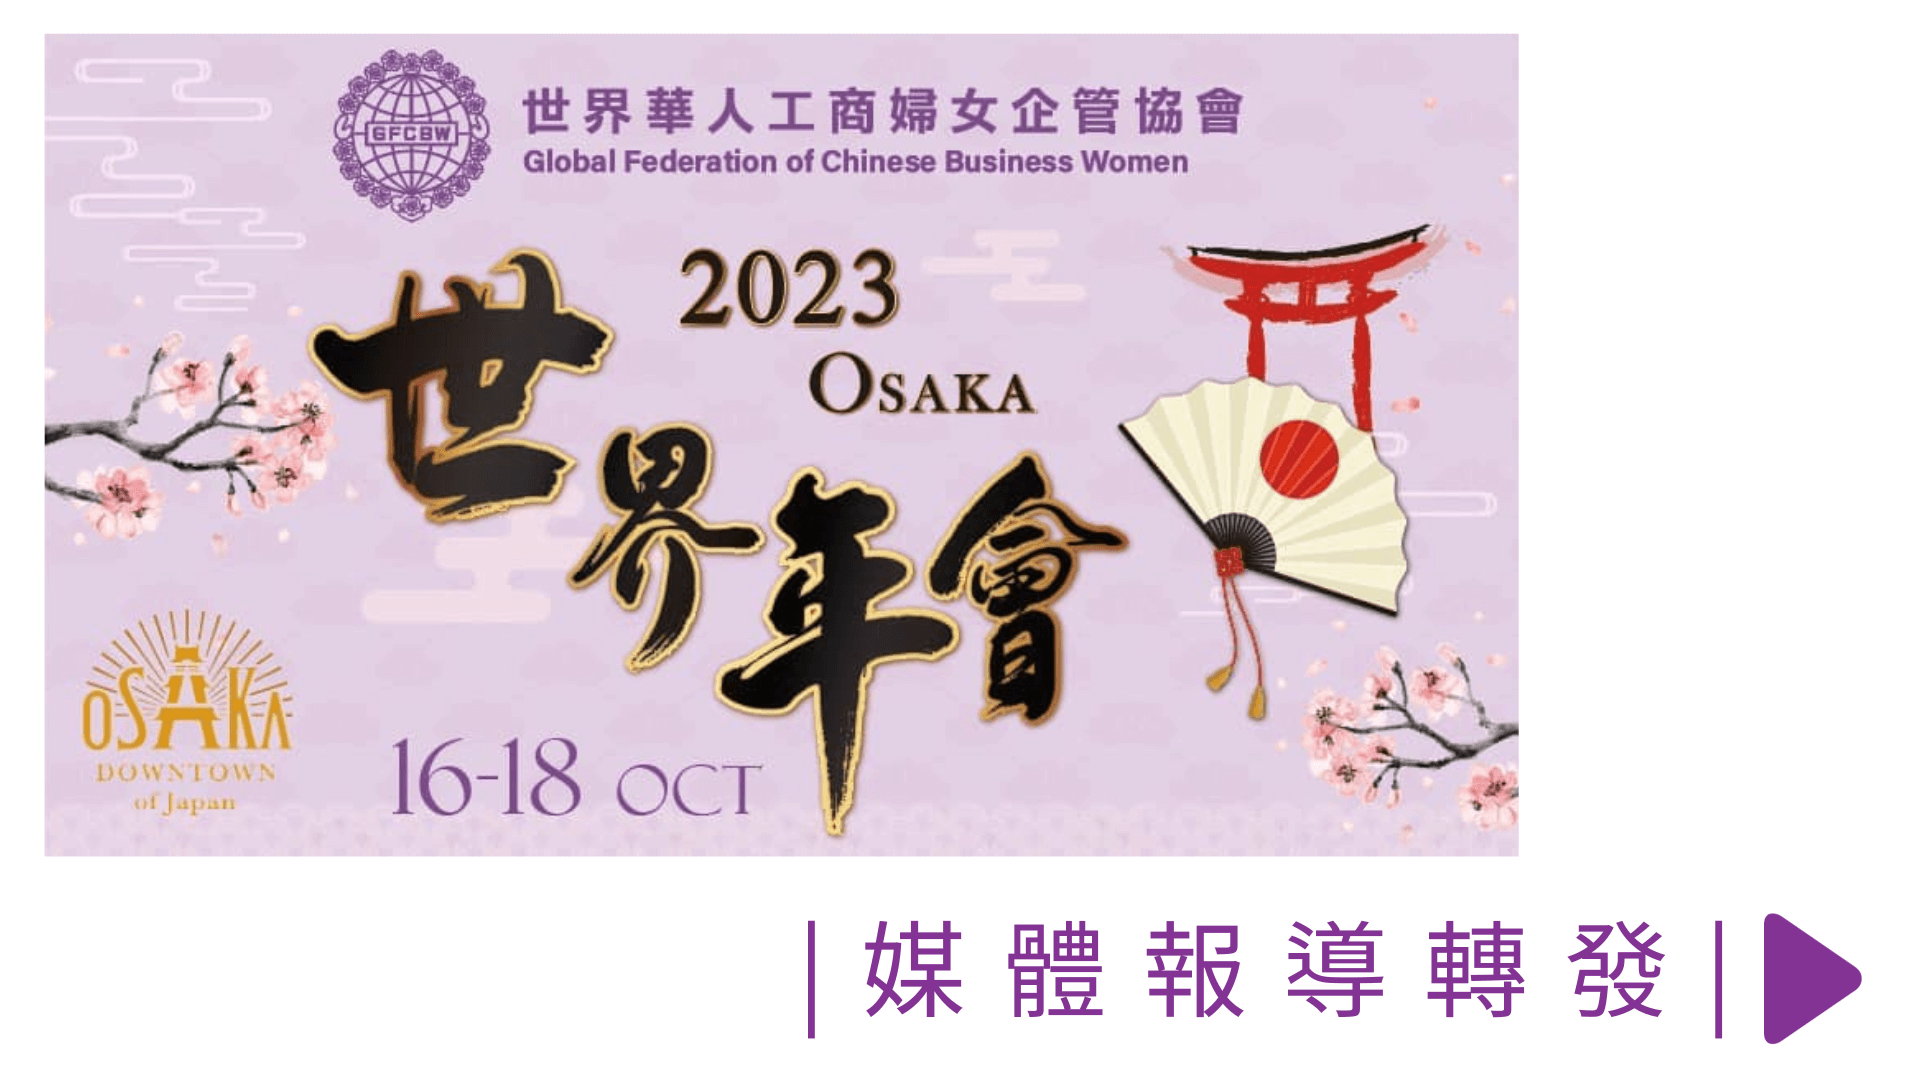 【媒體報導轉發】2023日本大阪世界年會